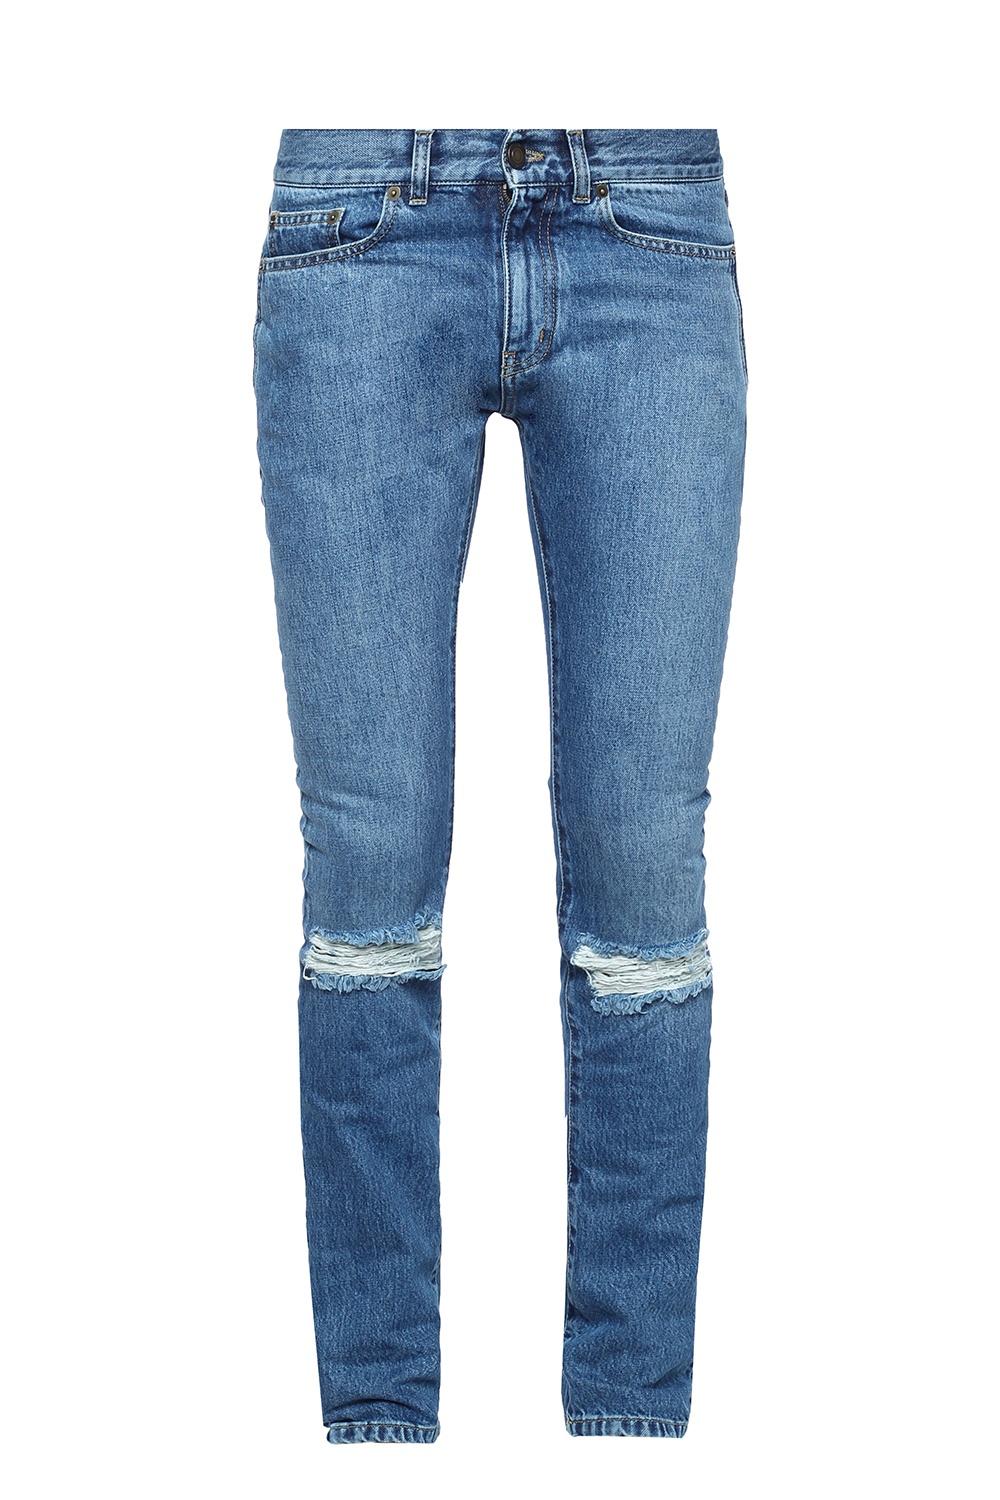 Jeans with holes Saint Laurent - Vitkac GB